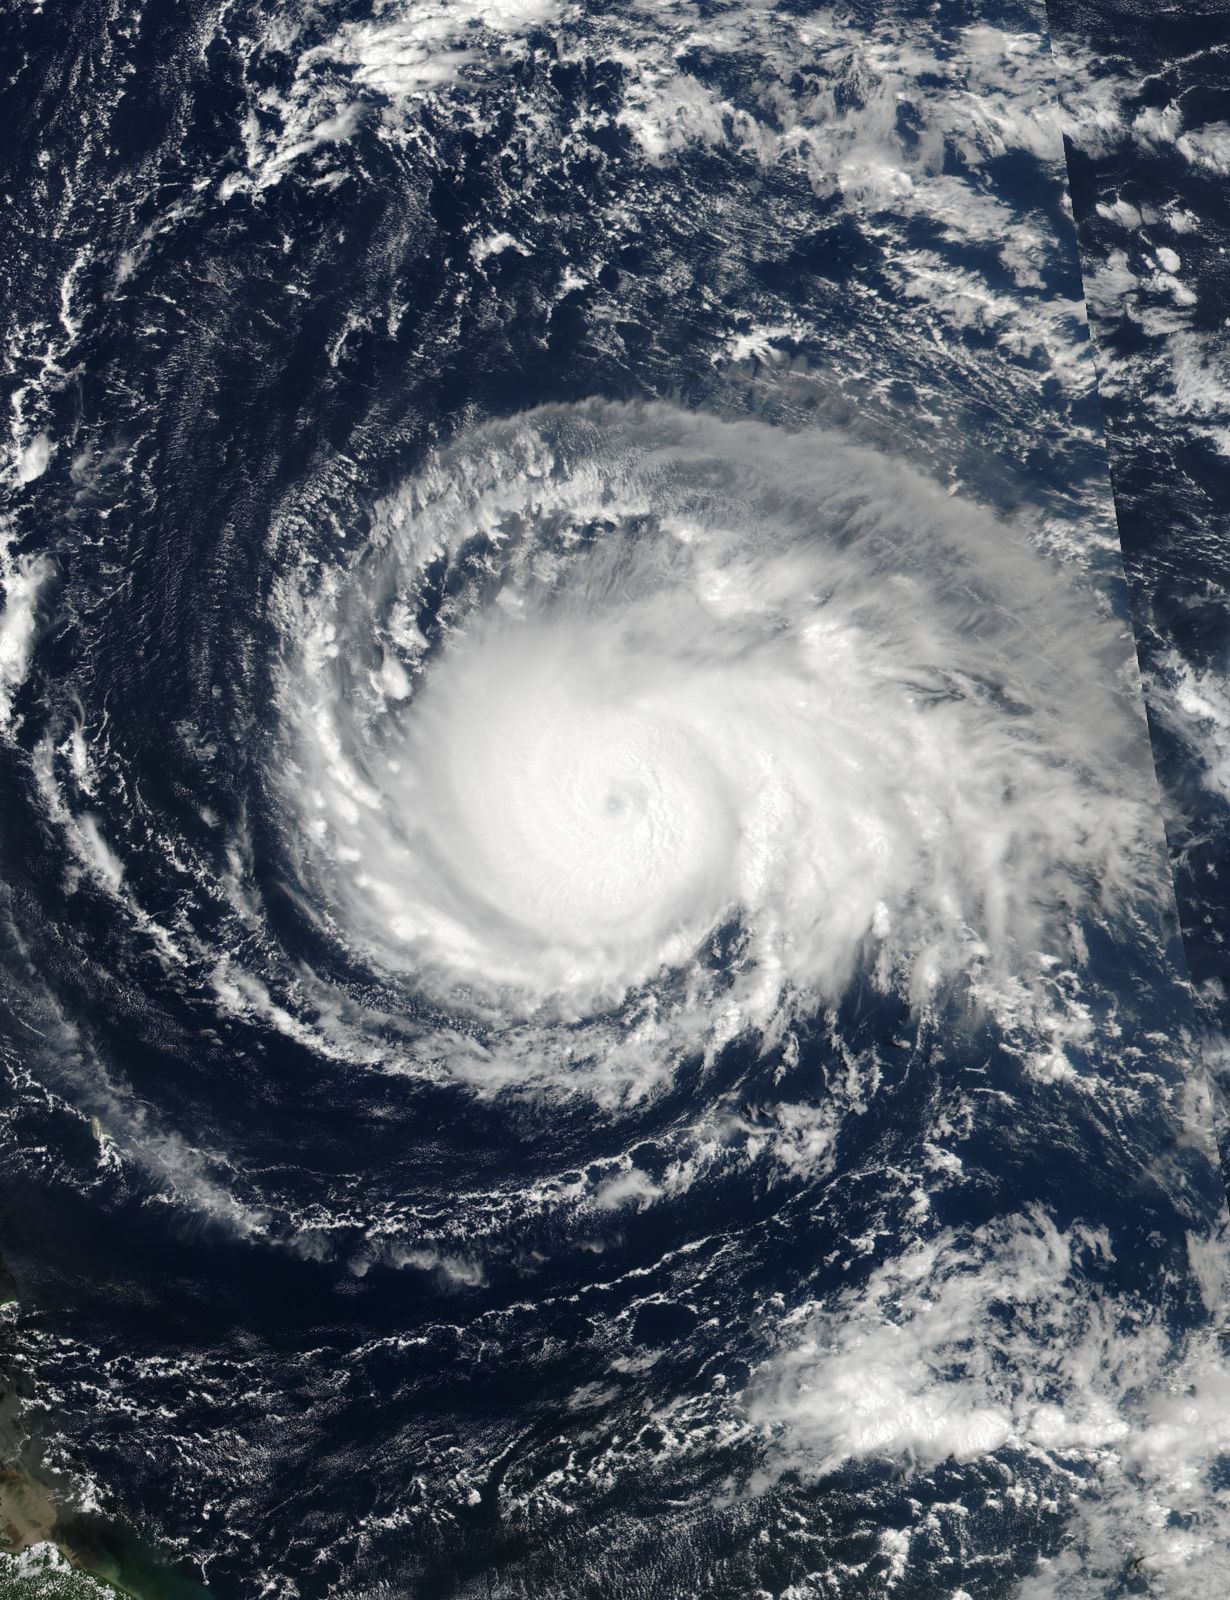 Tropikalny sztorm Phillipe zbliża się do Florydy